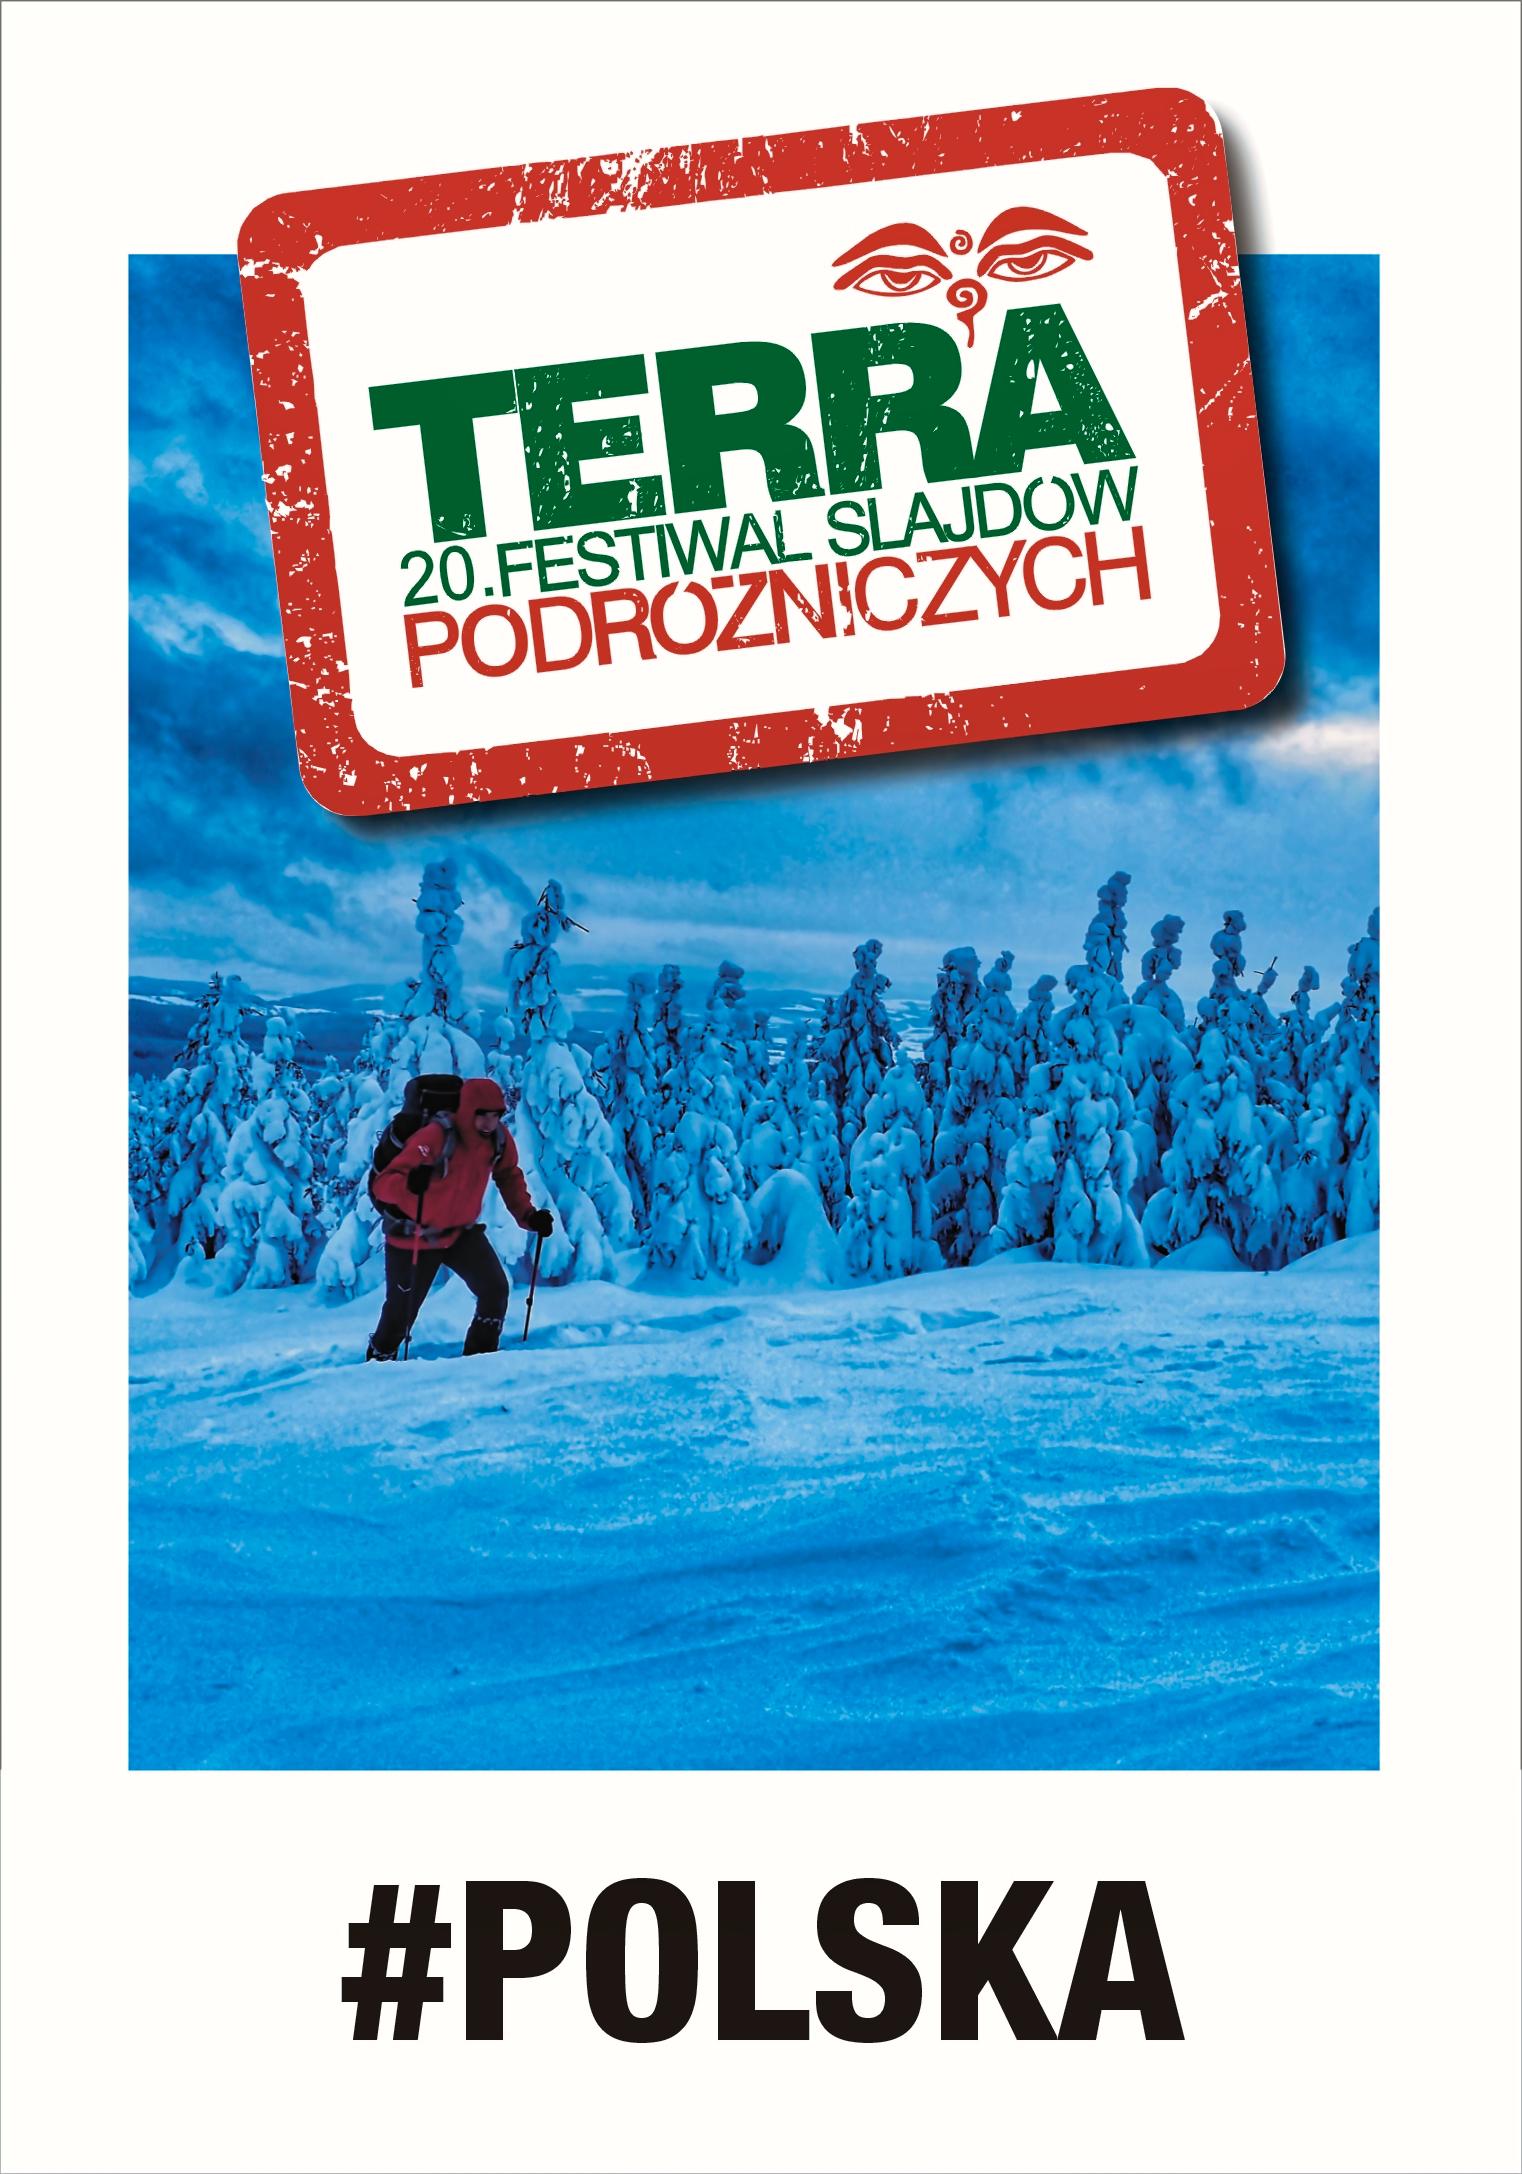 20. Festiwal Slajdów Podróżniczych TERRA: „Zimowe przejście górami Polski”